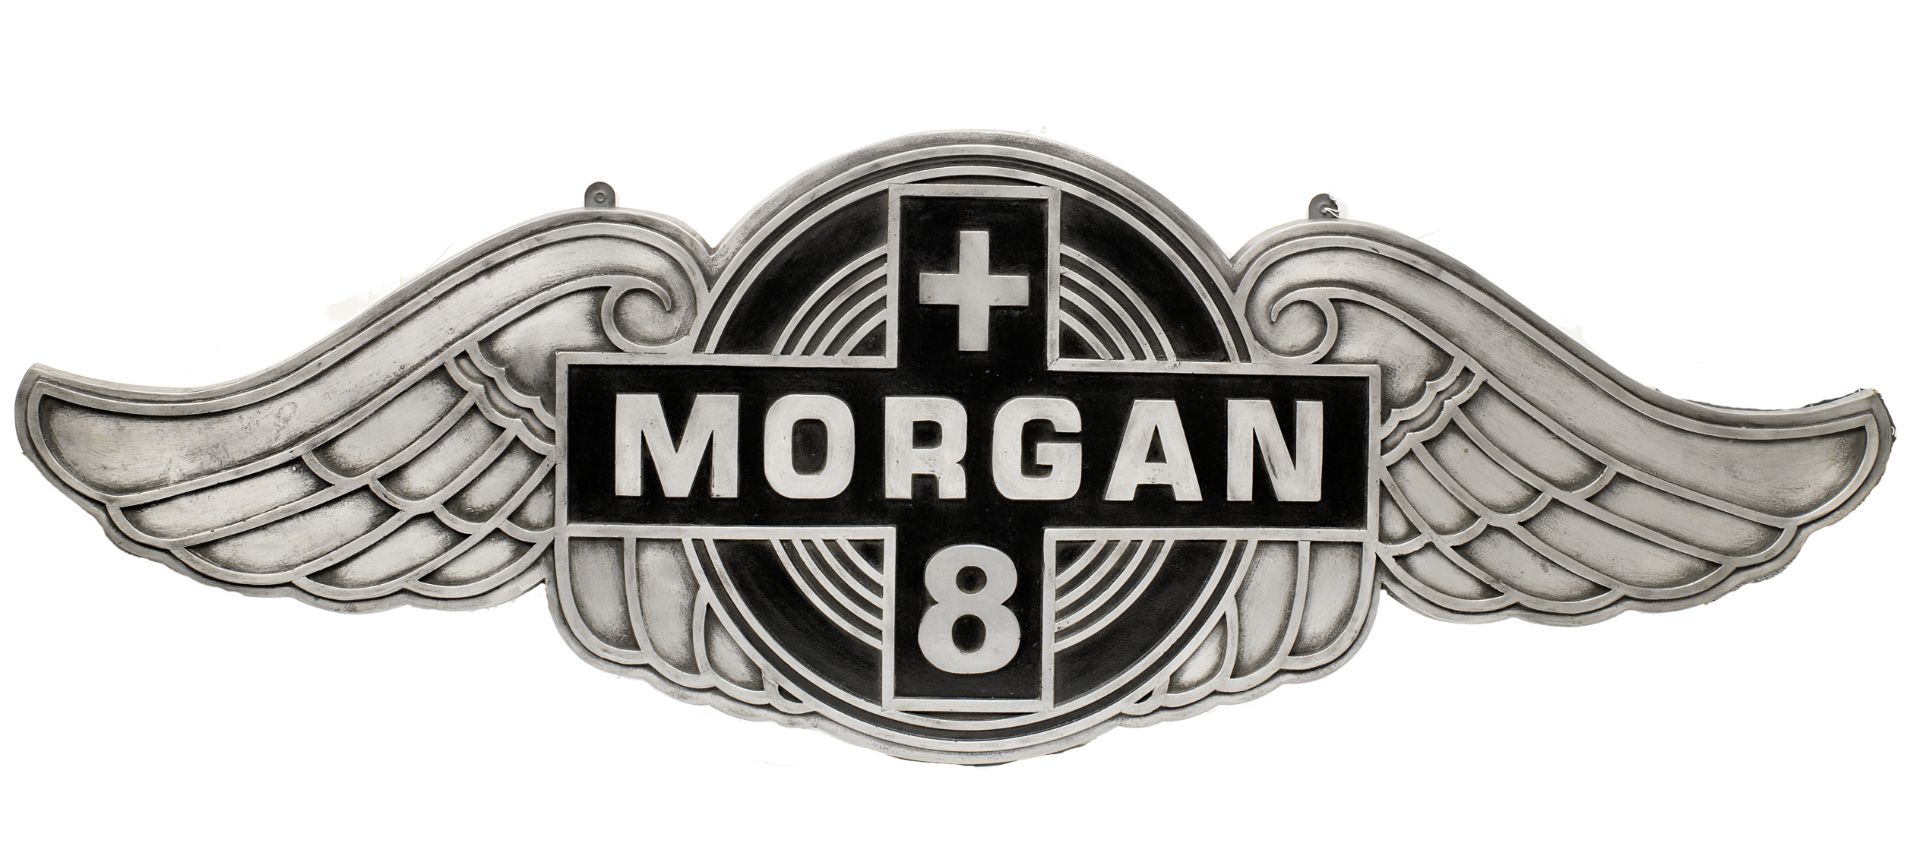 A 'Morgan+8' garage display emblem,